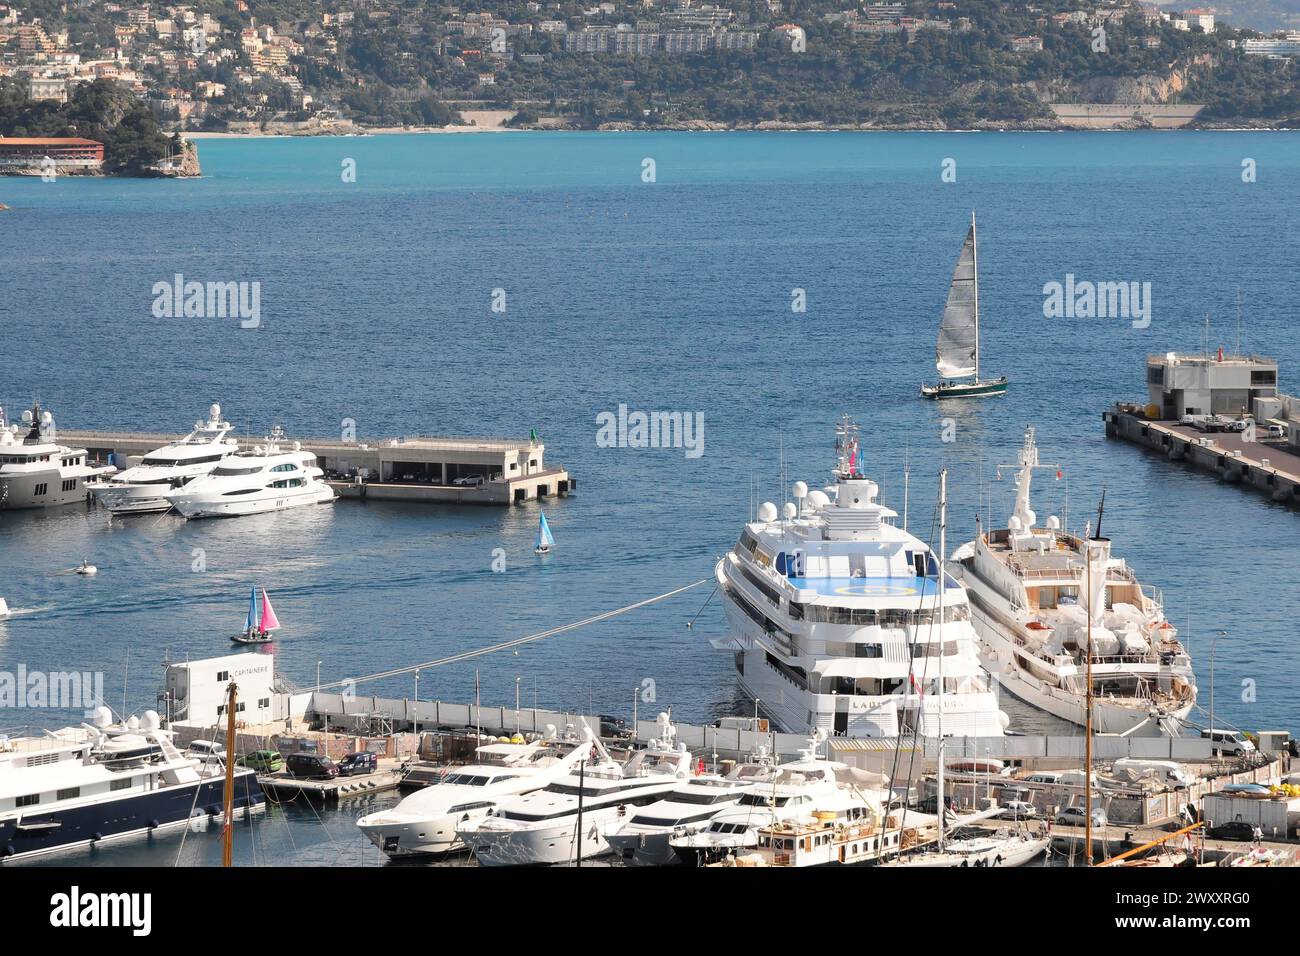 Hafen von Monte Carlo, Yachten und ein Segelboot auf einem klaren blauen Meer in der Nähe der Küste, Monte Carlo, Fürstentum Monaco, Cote d'Azur Stockfoto